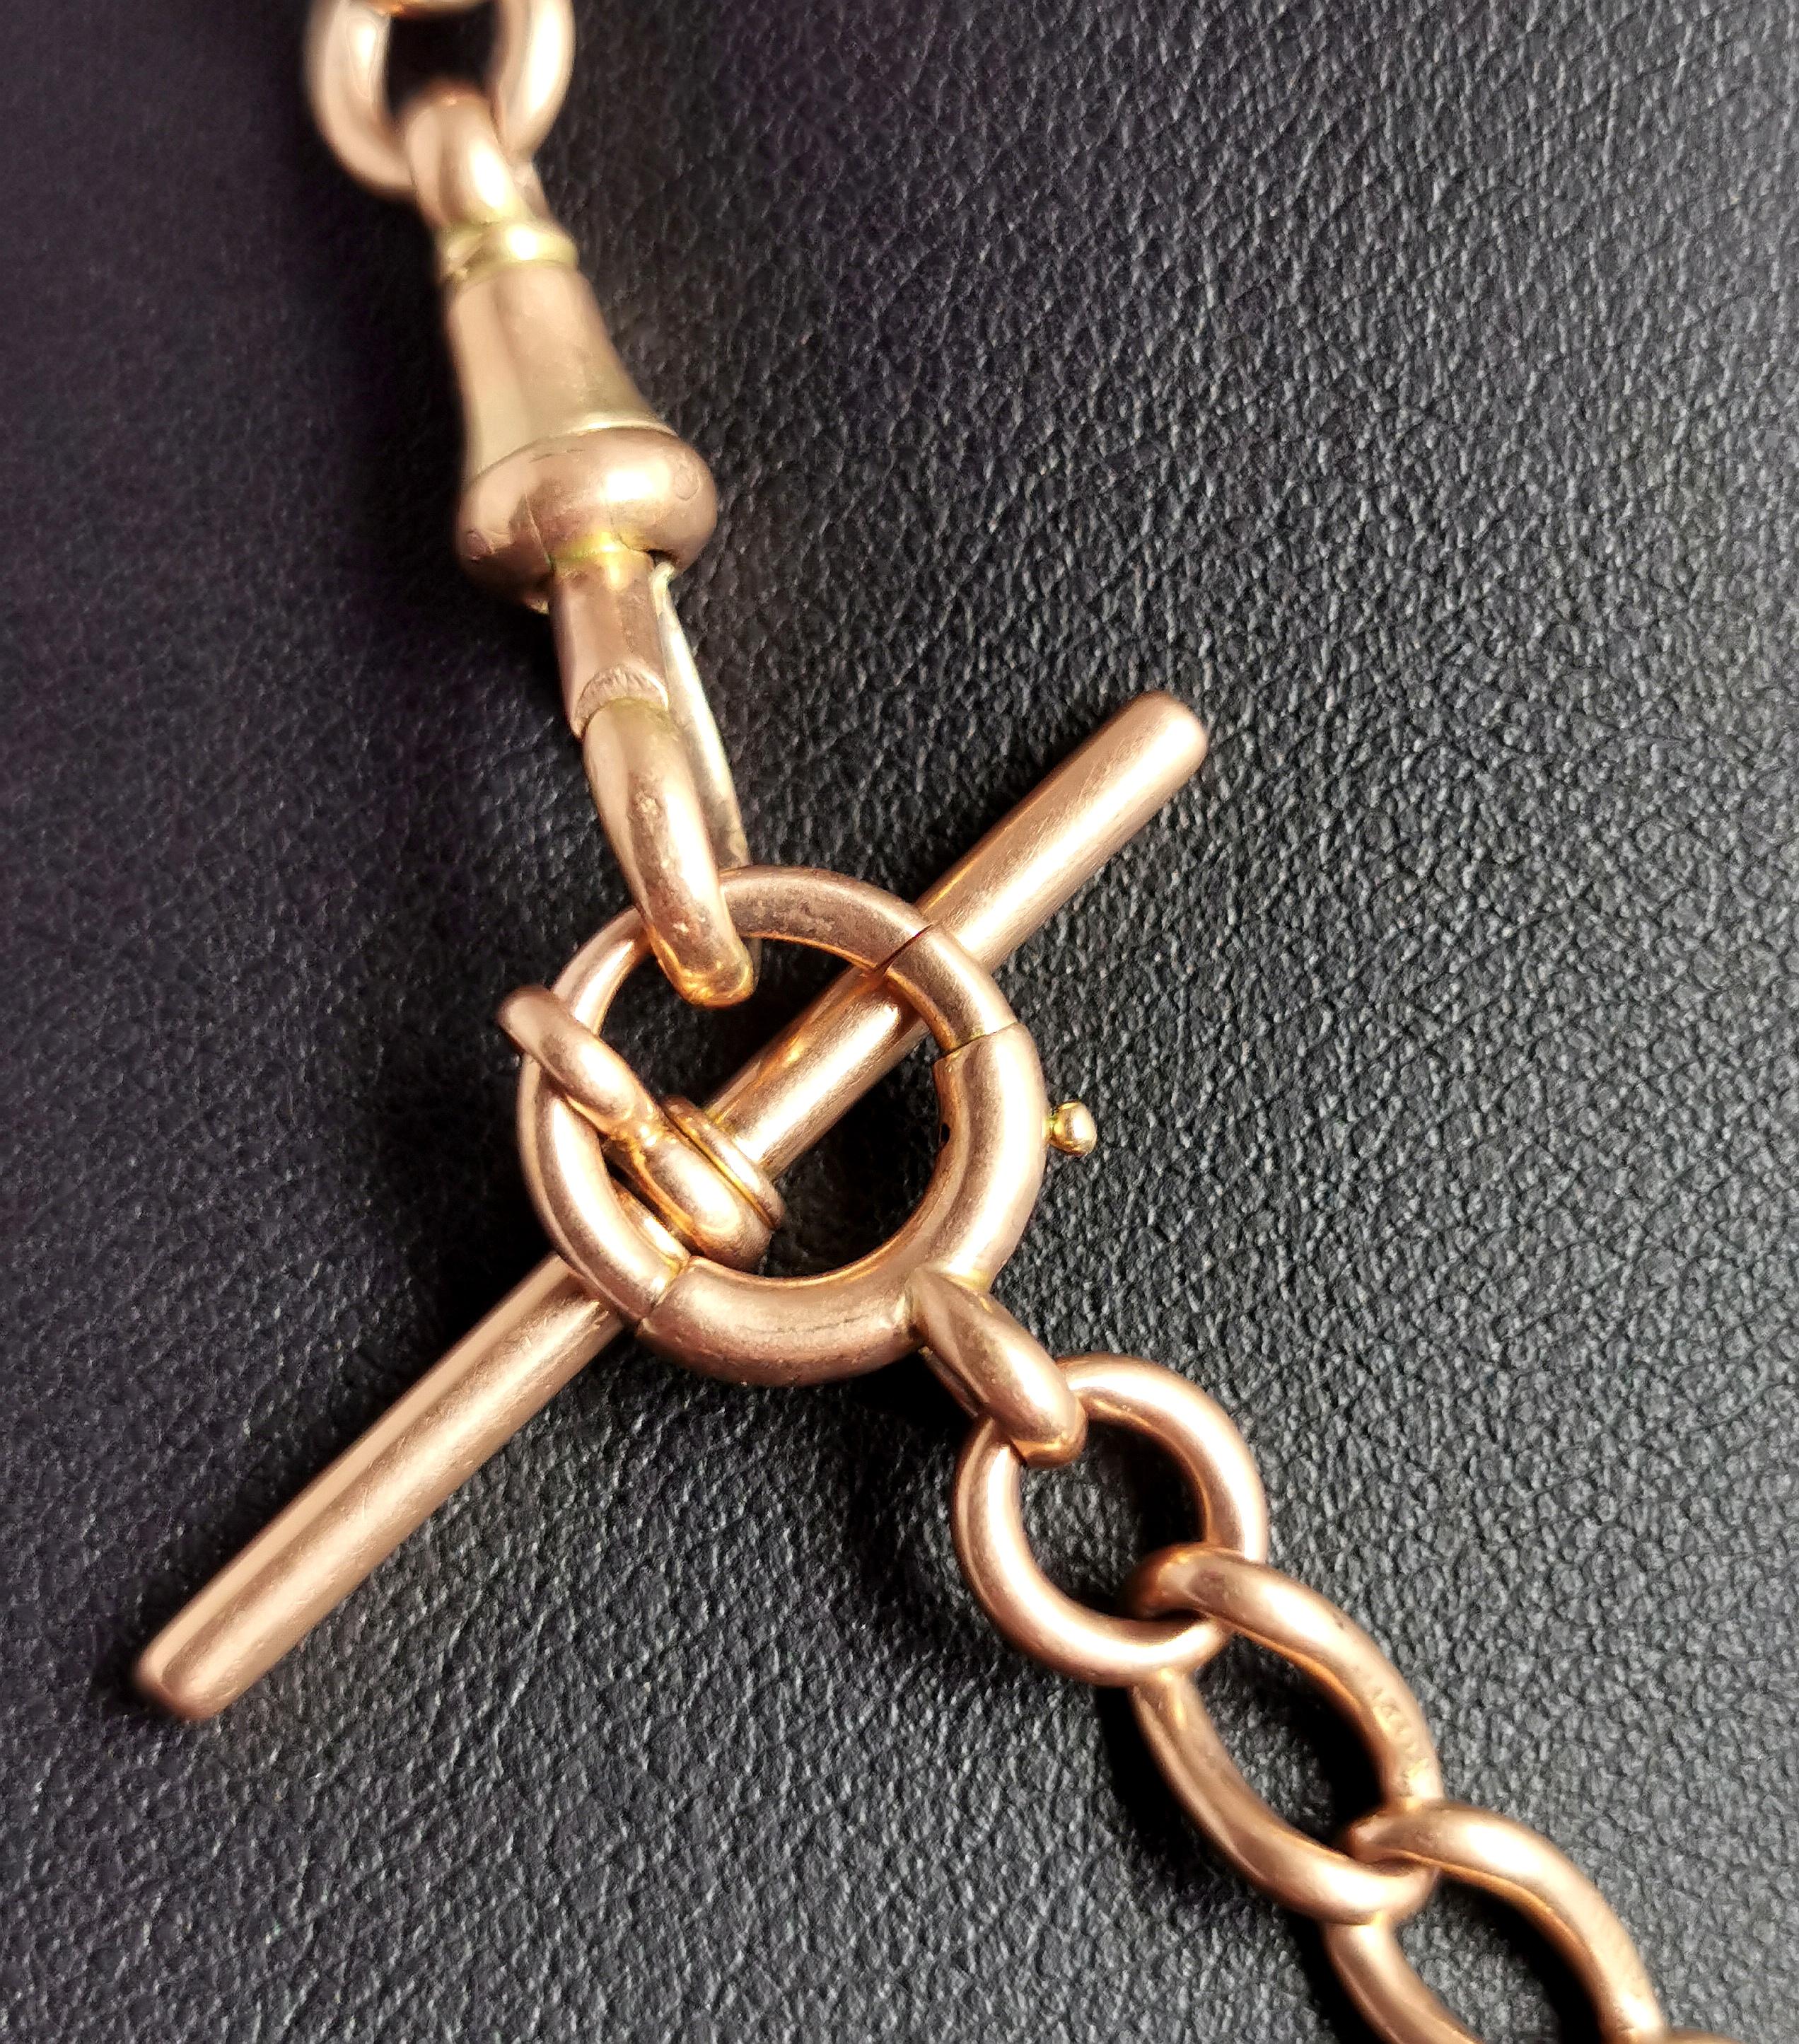 Antique 15k Gold Albert Chain, Watch Chain Necklace, Victorian 1